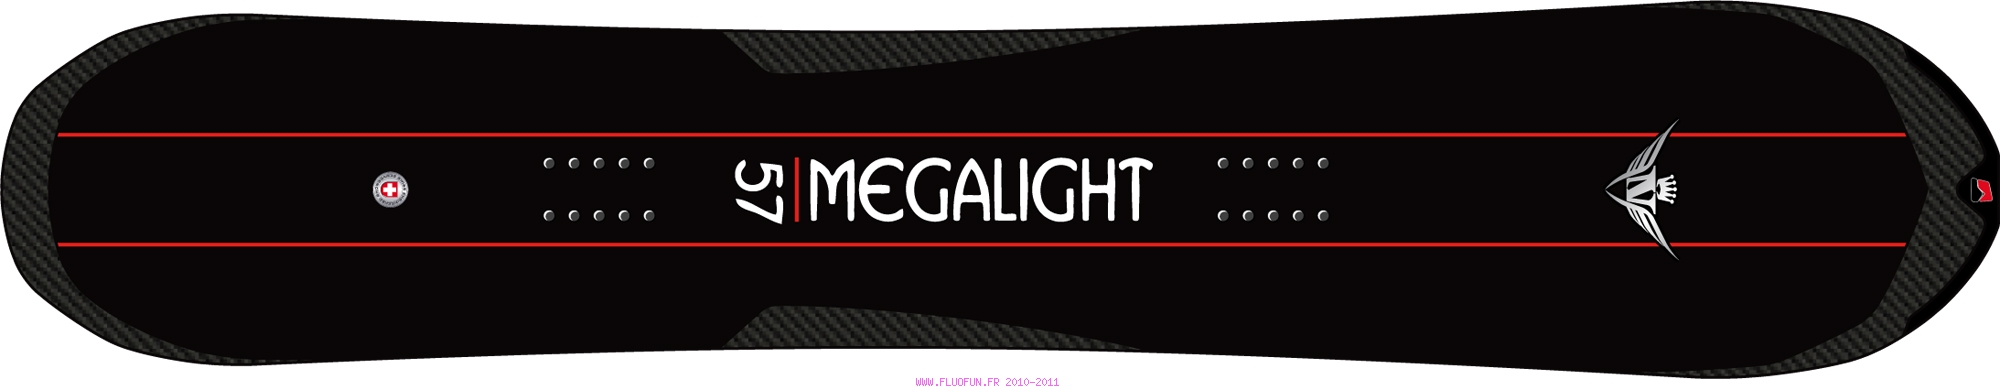 Megalight Camrock 2011 Nidecker Megalight Camrock